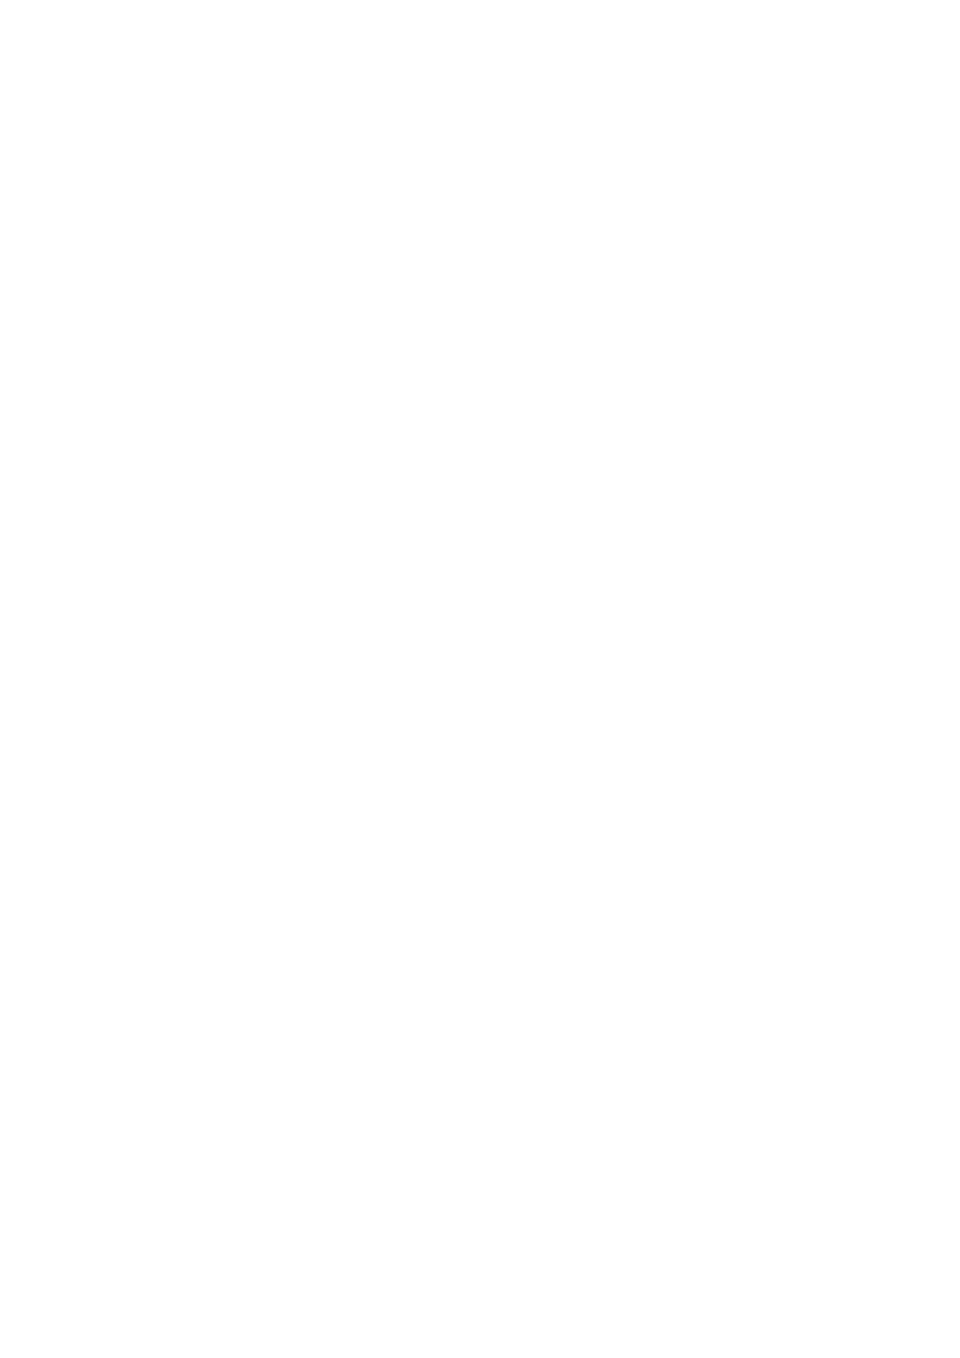 23/11 RS 24/11 Referatsaker NVE - 420 kv kraftledning Skaidi Varangerbotn - Orientering om utredningsprogram Porsanger kommune - Melding om vedtak - Søknad om tillatelse etter PBL for oppføring av